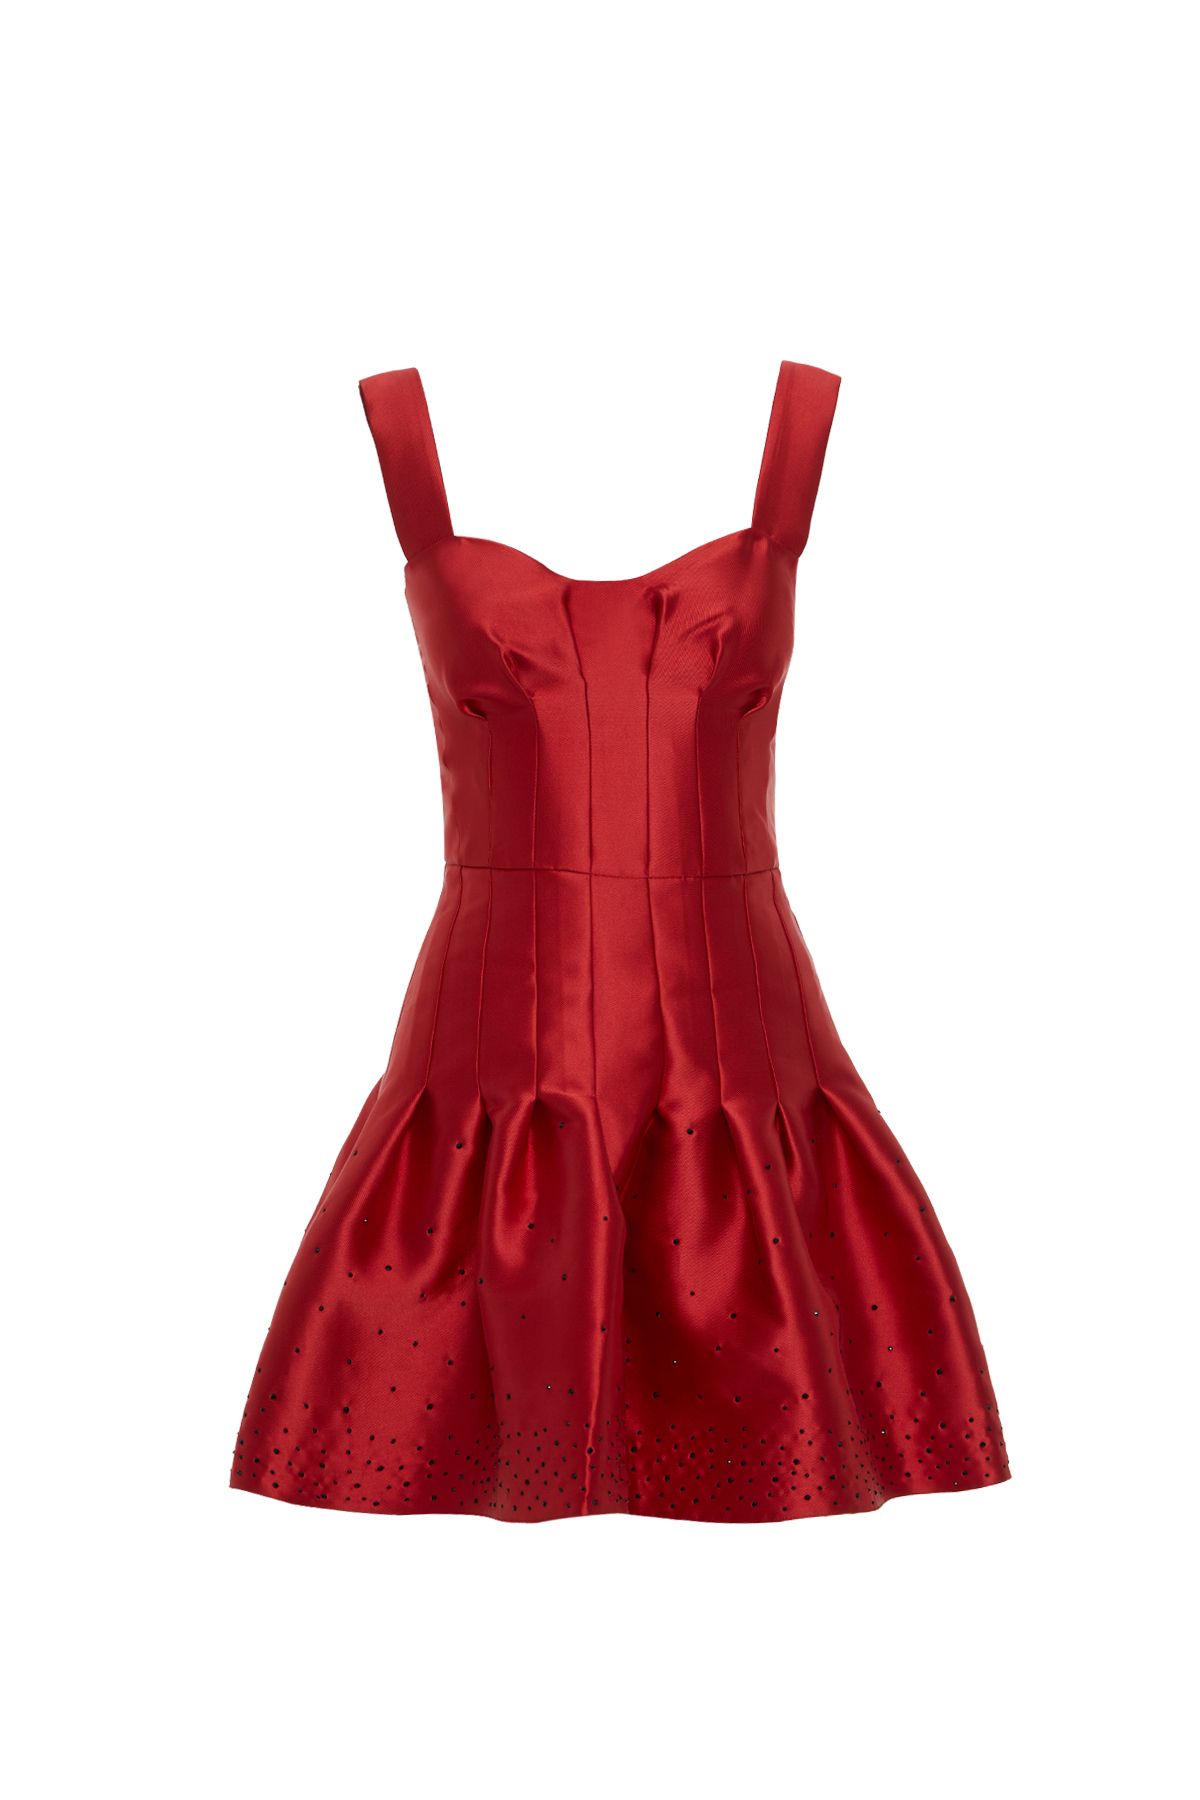 GIZIA Etek Ucu Detaylı Kırmızı Mini Elbise